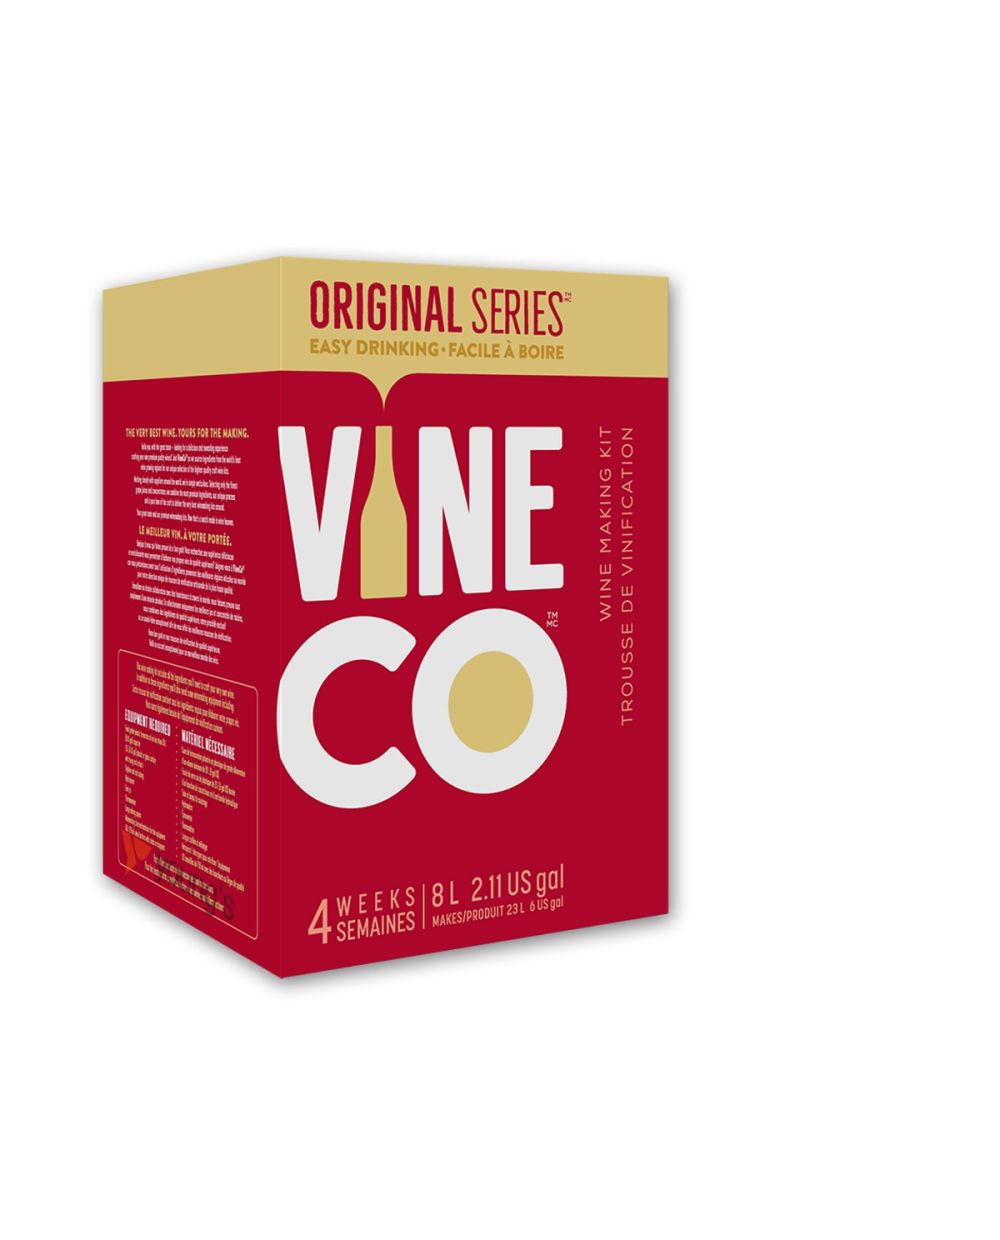 Original Series Viogneir, California Wine Kit